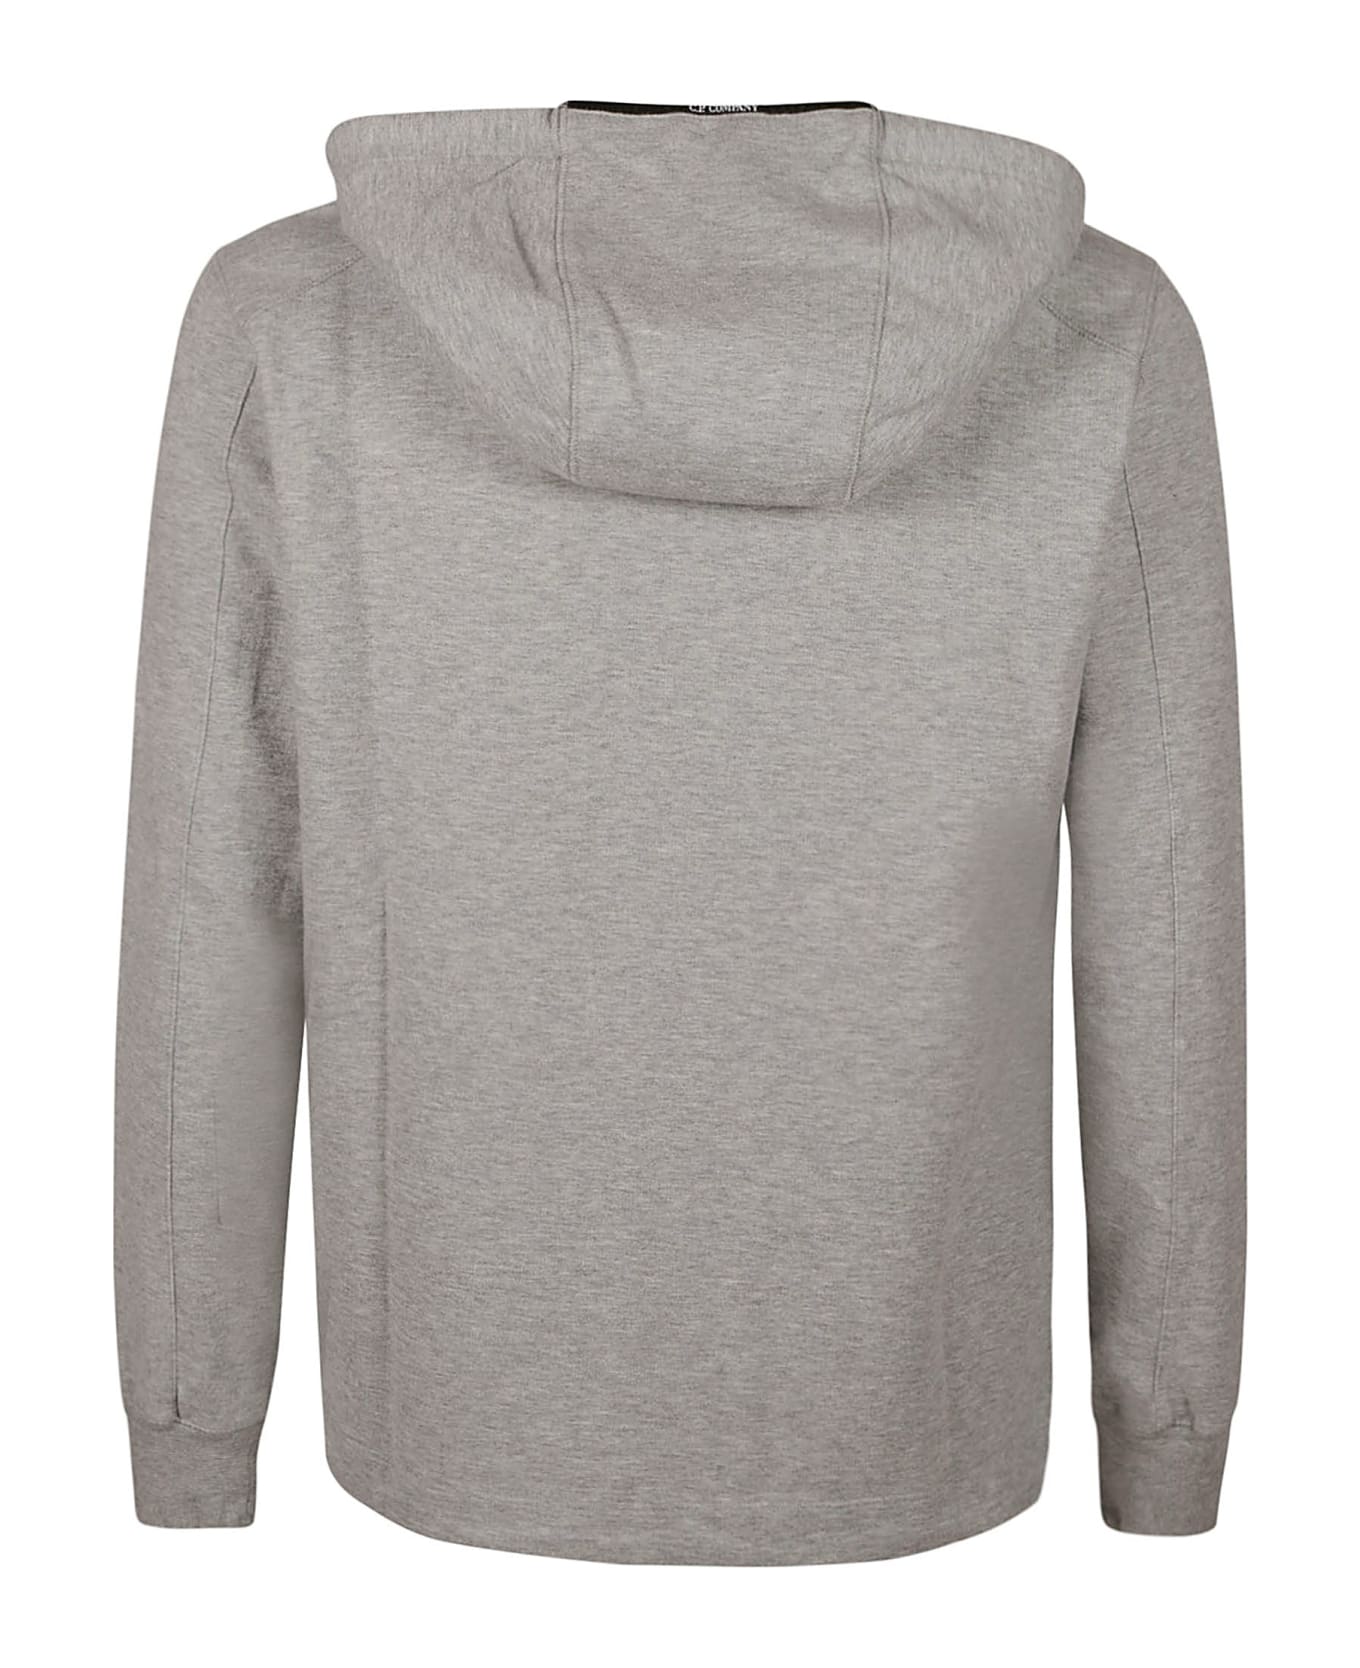 C.P. Company Light Fleece Hooded Sweatshirt - GREY MELANGE